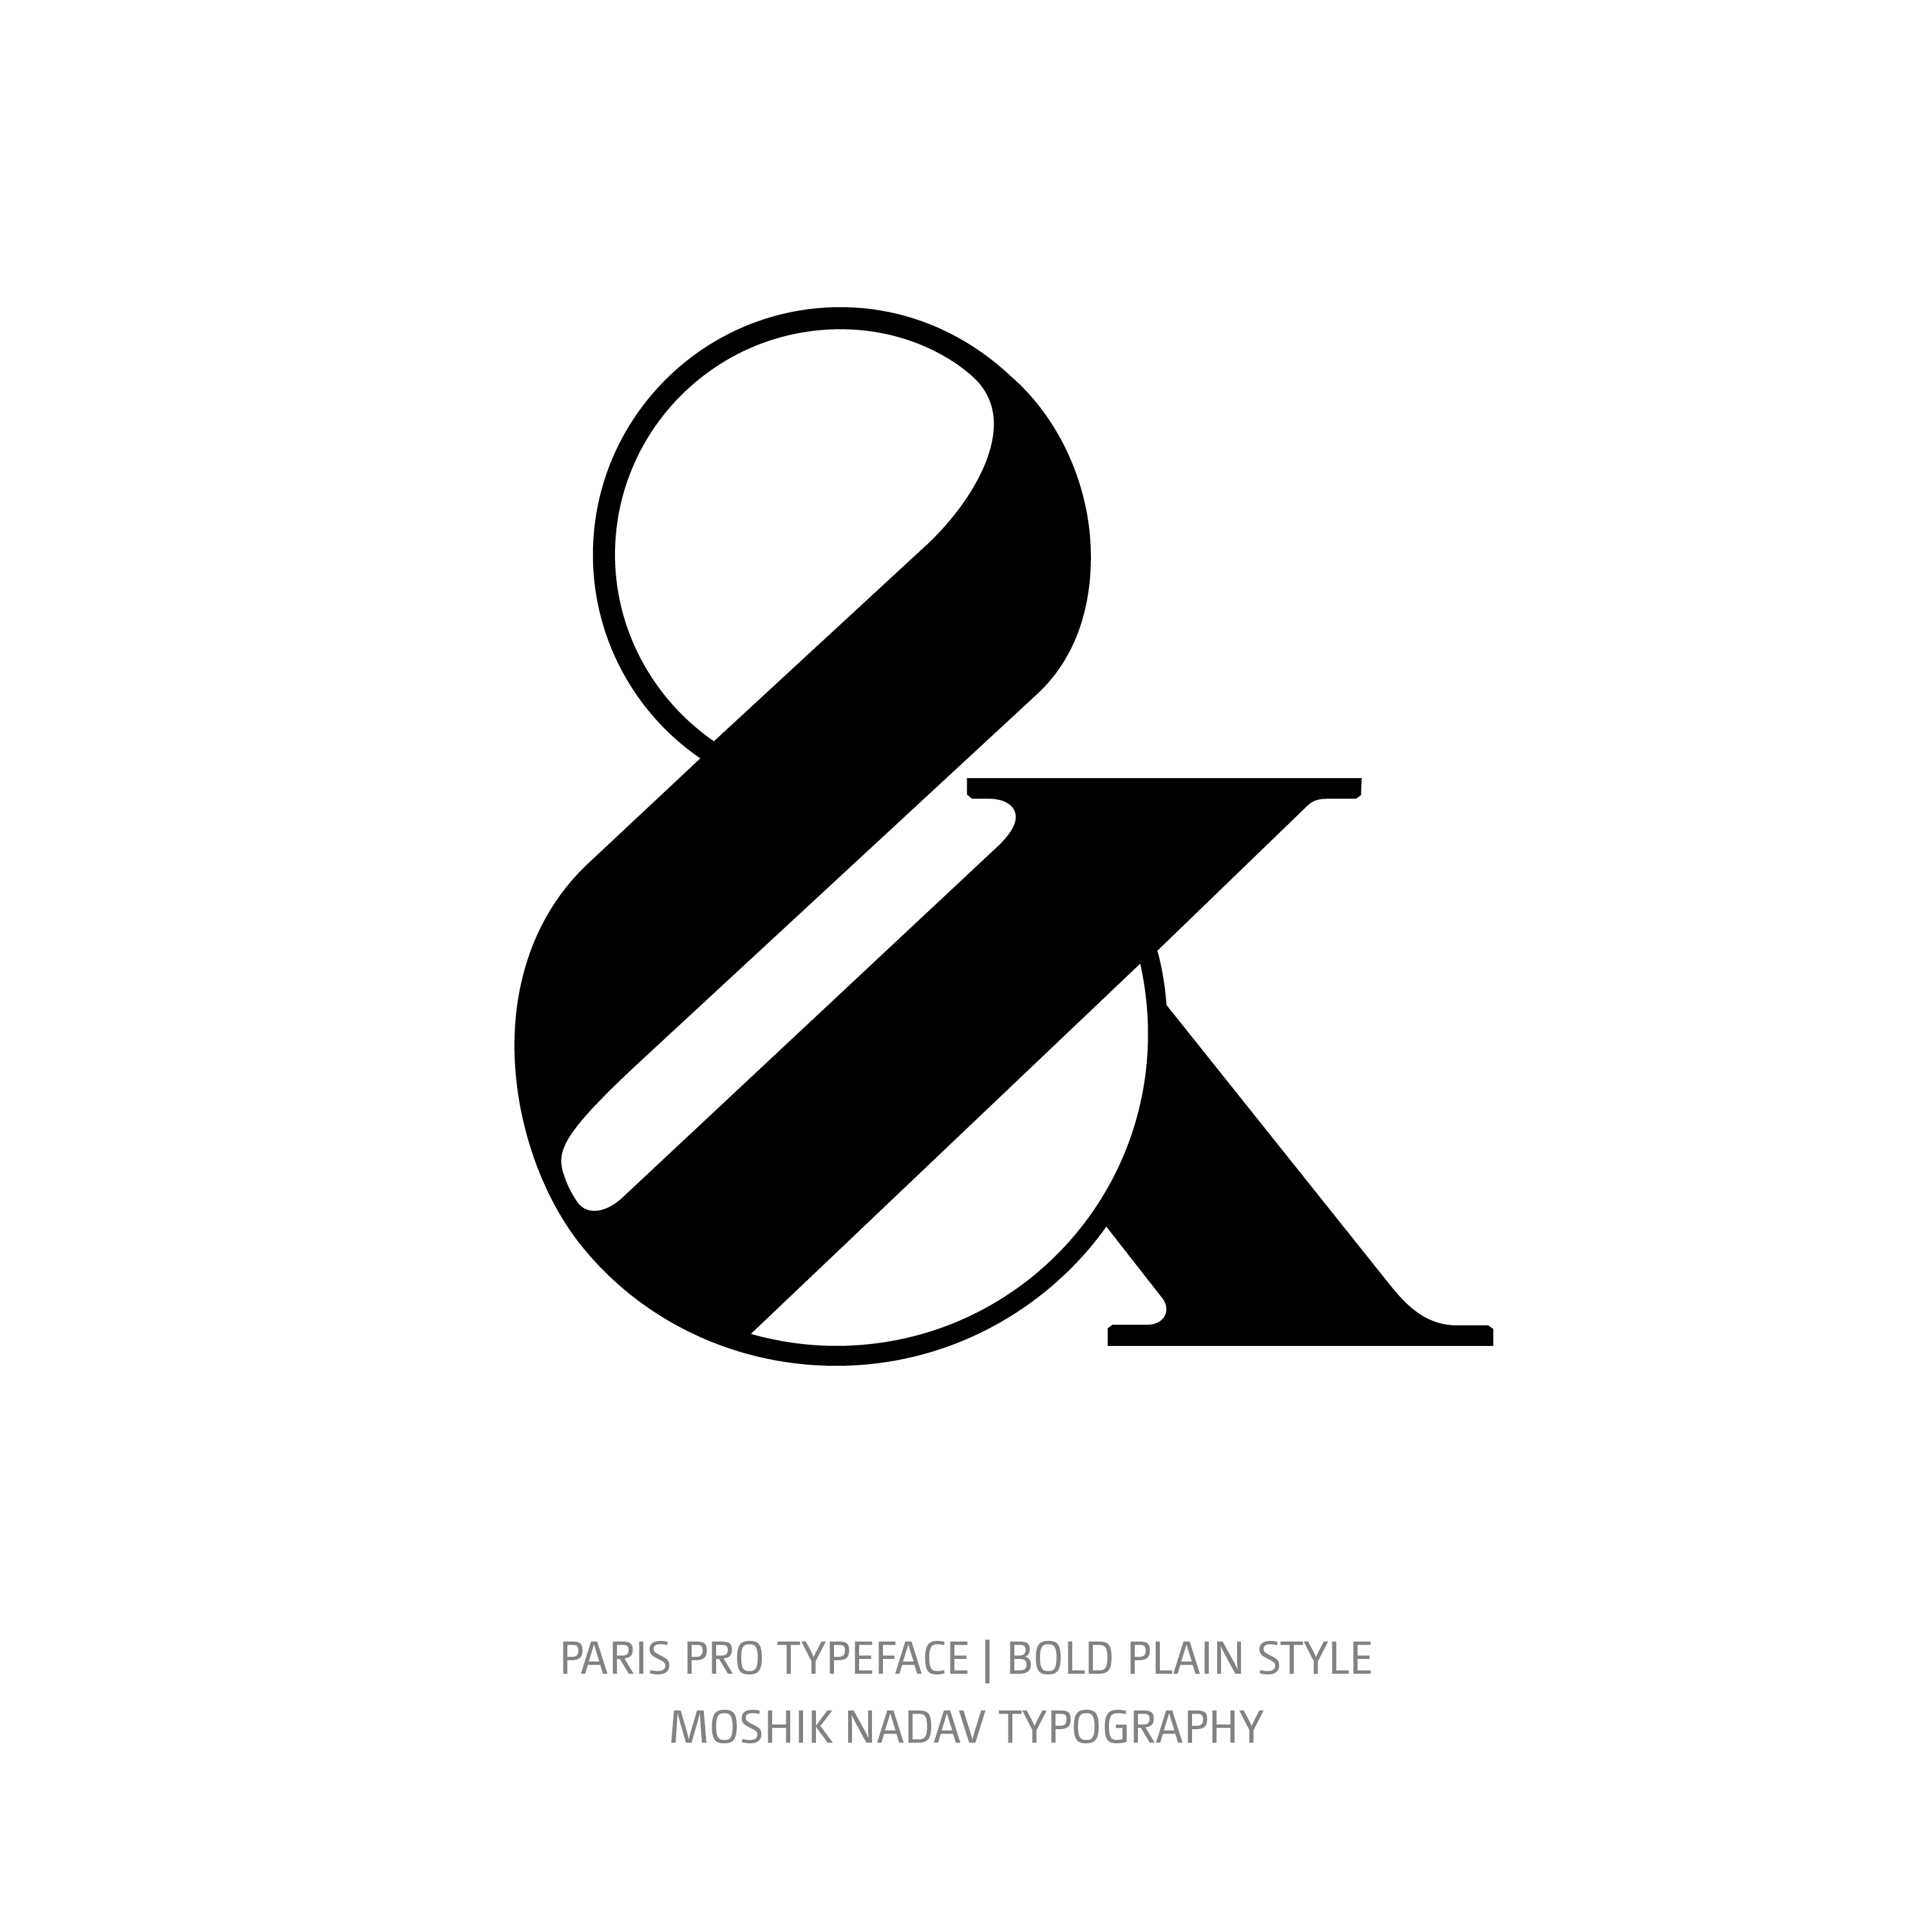 Paris Pro Typeface Bold Plain ampersand